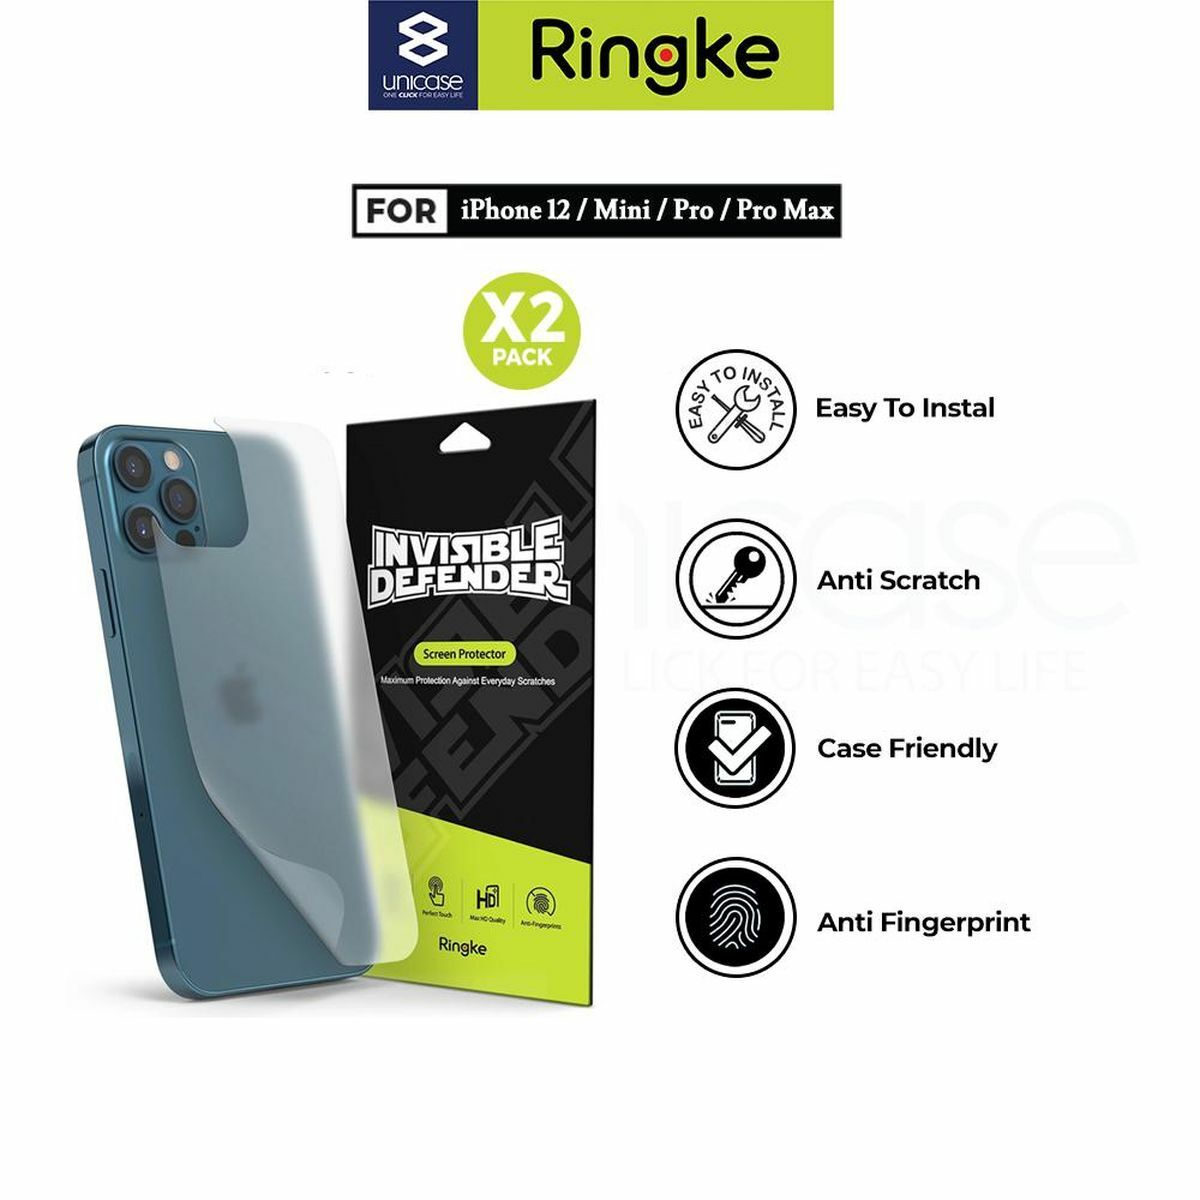 Kép 2/8 - Ringke iPhone 12 Pro Max hátlap védő fólia, Invisible Defender (2pcs), Átlátszó